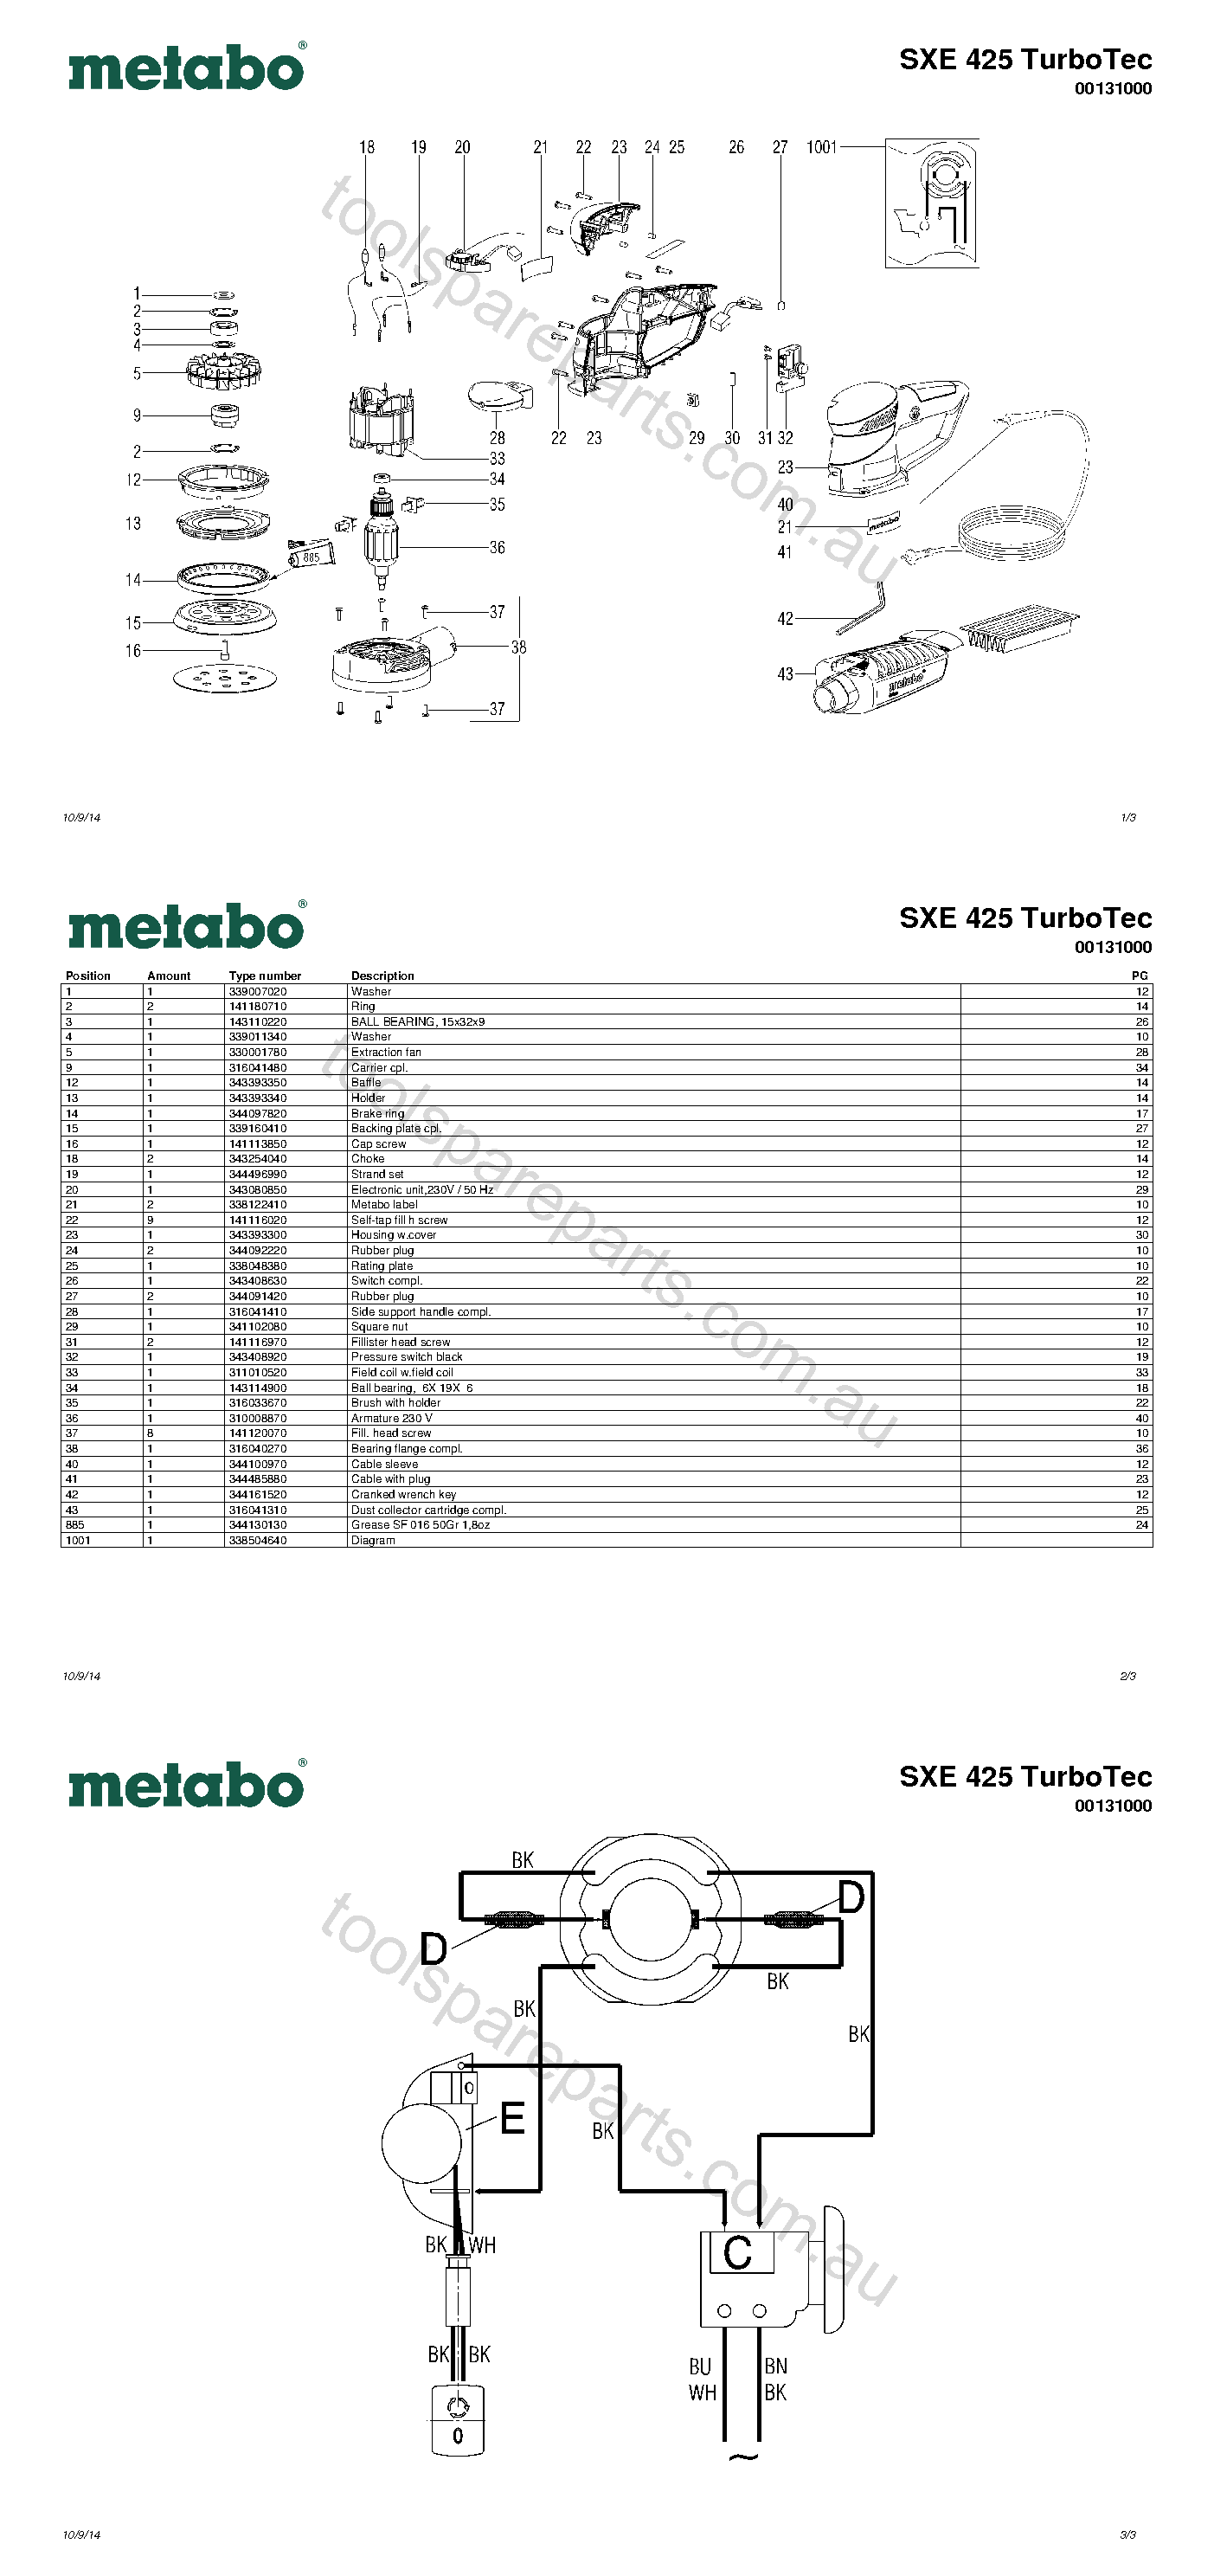 Metabo SXE 425 TurboTec 00131000  Diagram 1